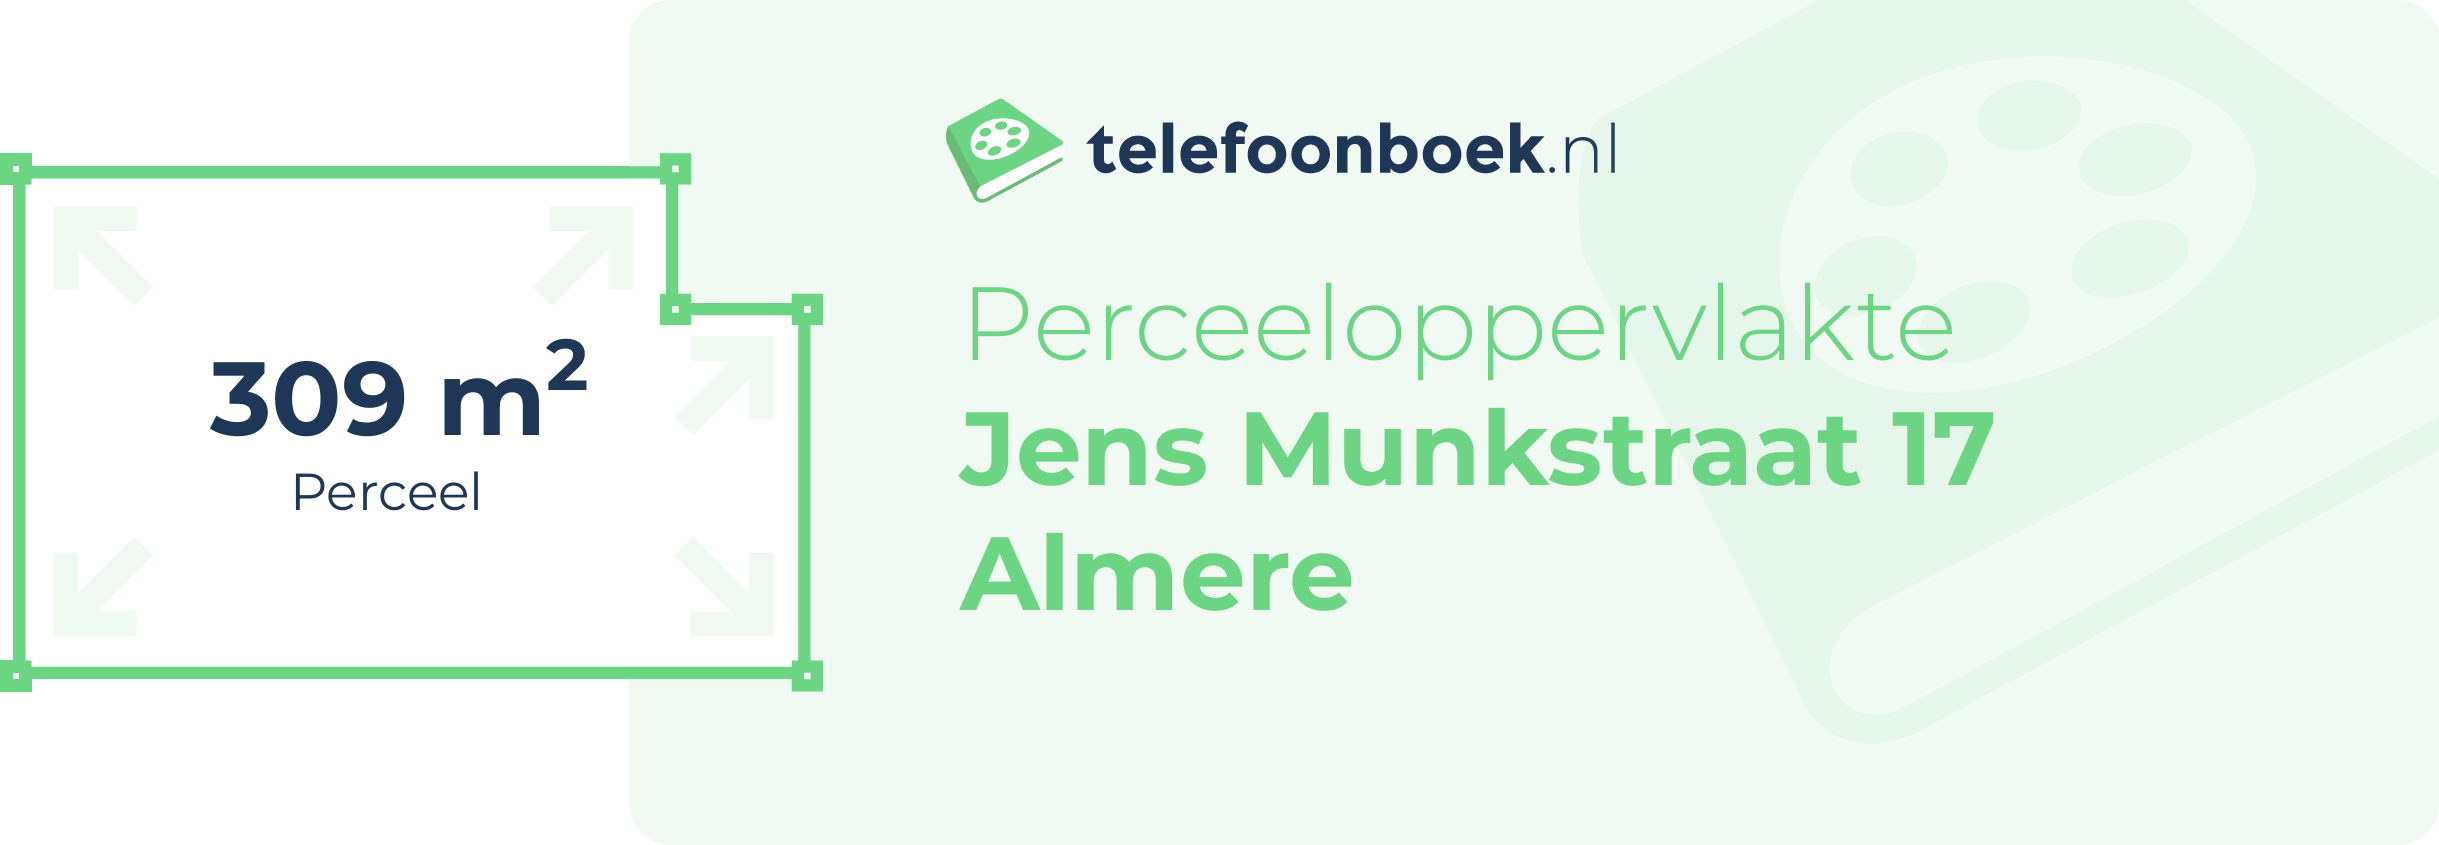 Perceeloppervlakte Jens Munkstraat 17 Almere